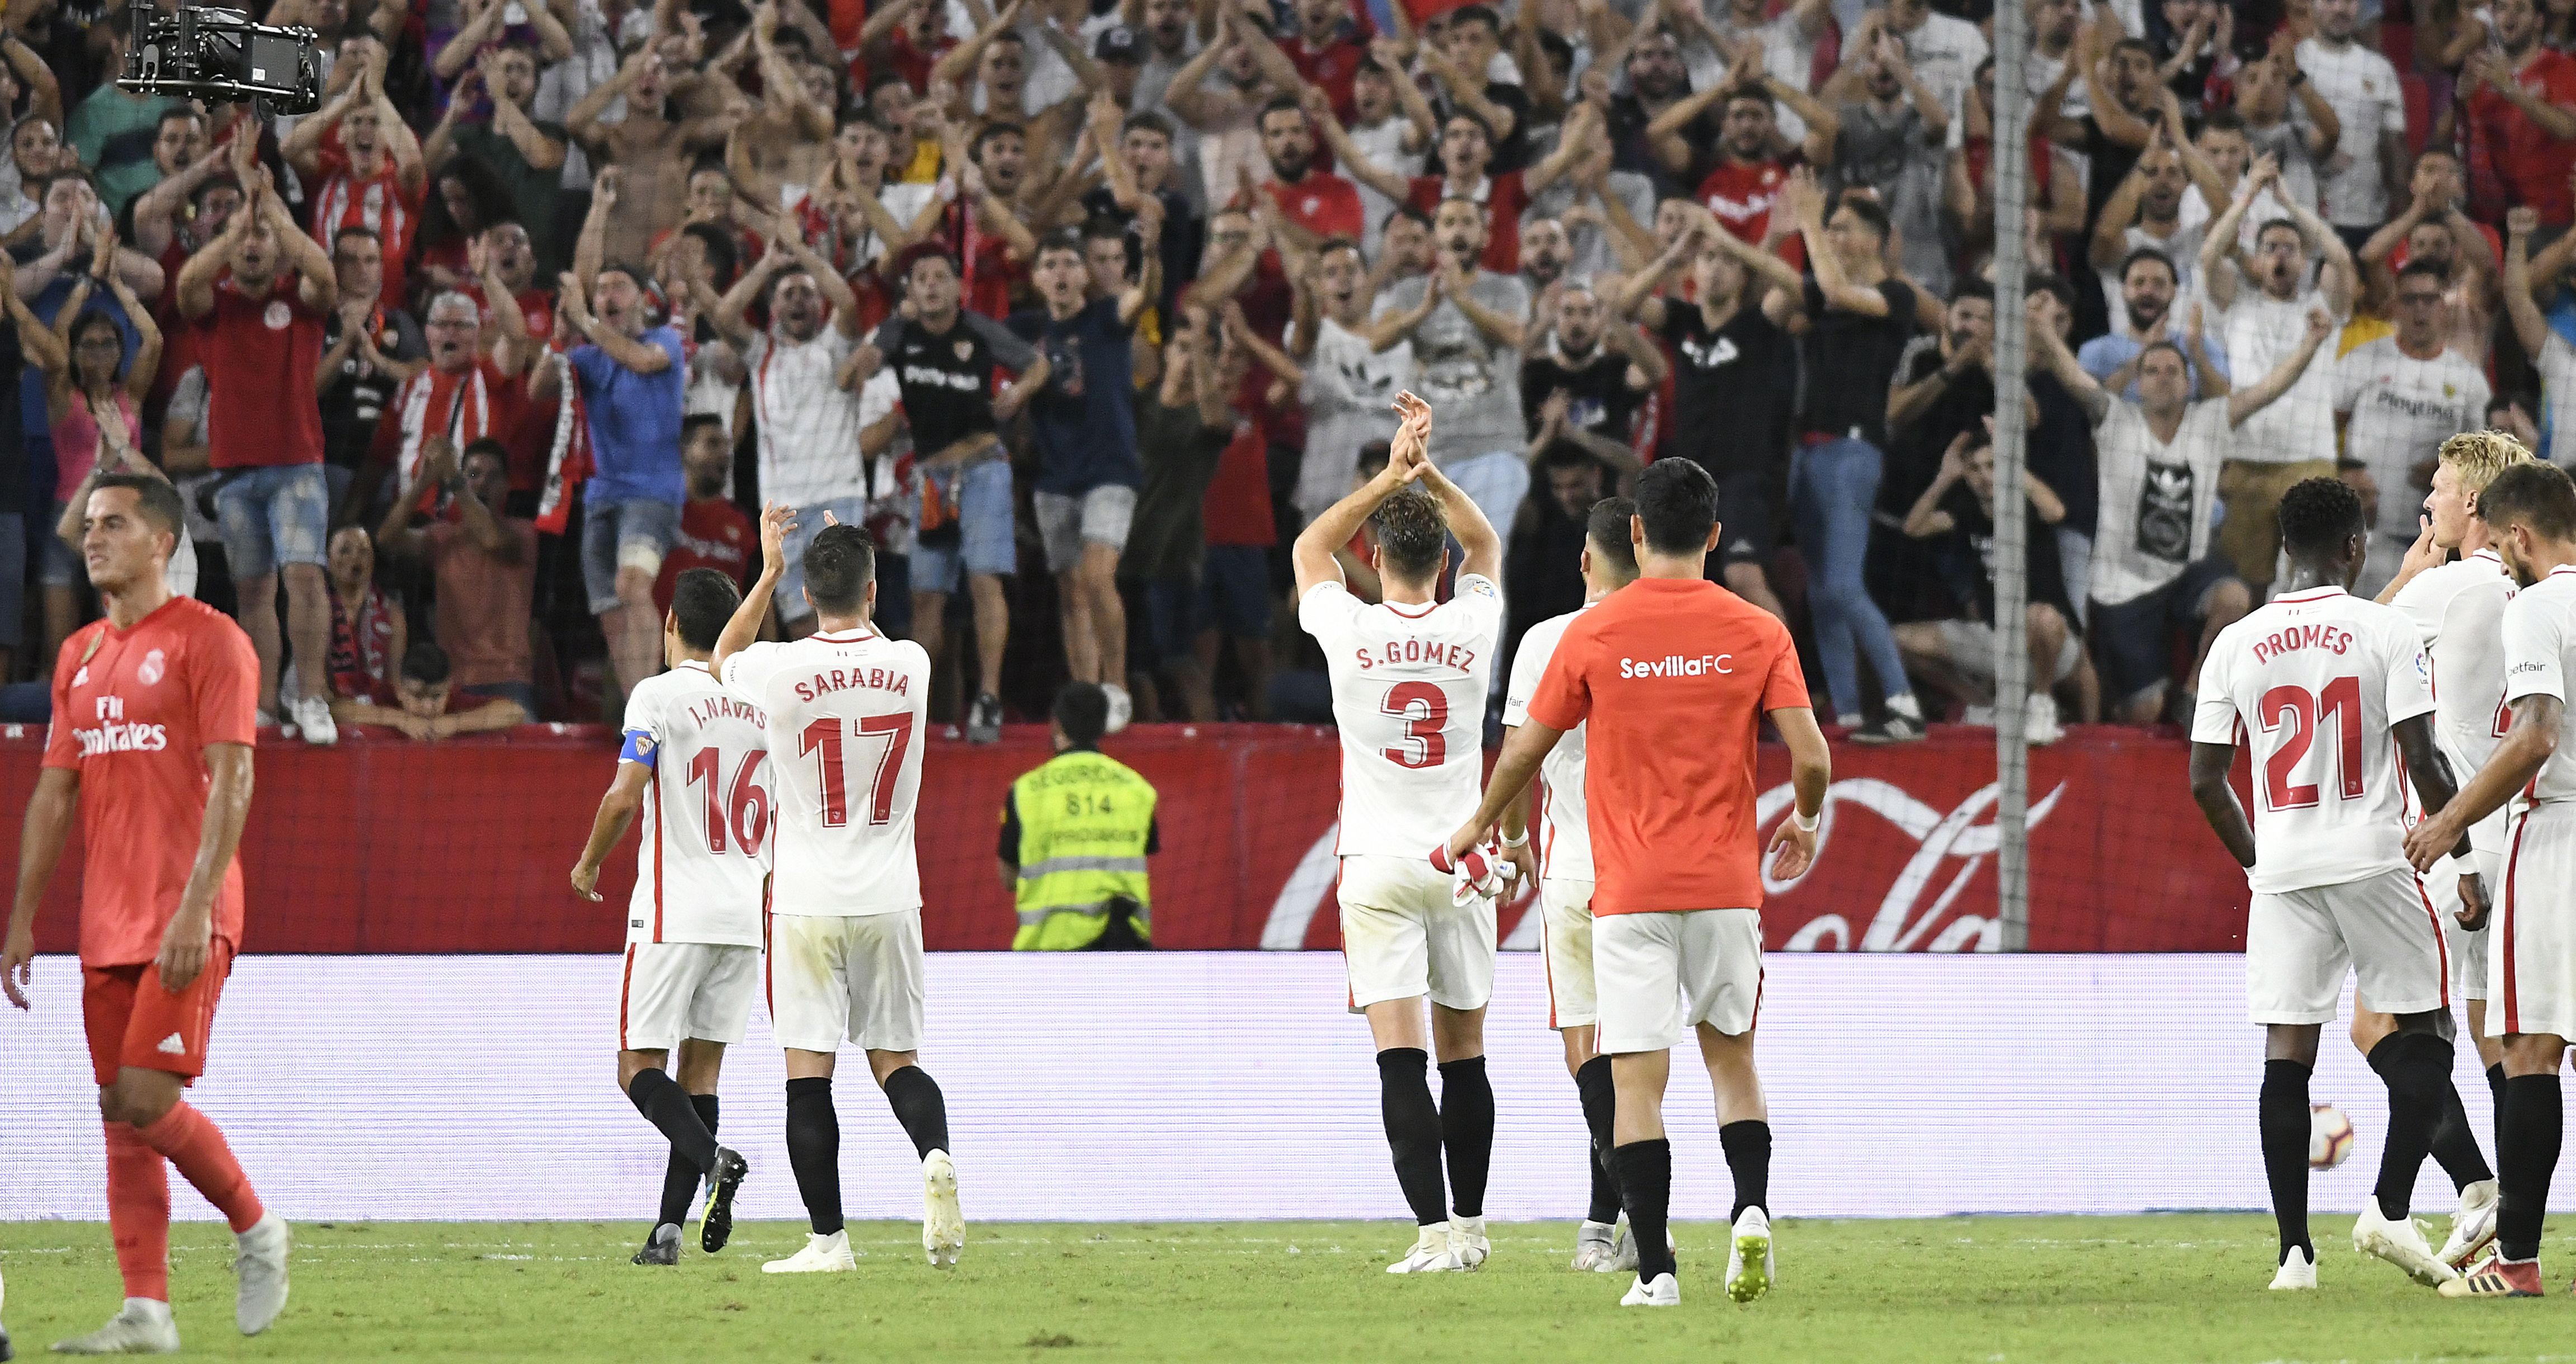 El Sevilla FC revisa su presupuesto al alza y confía en i